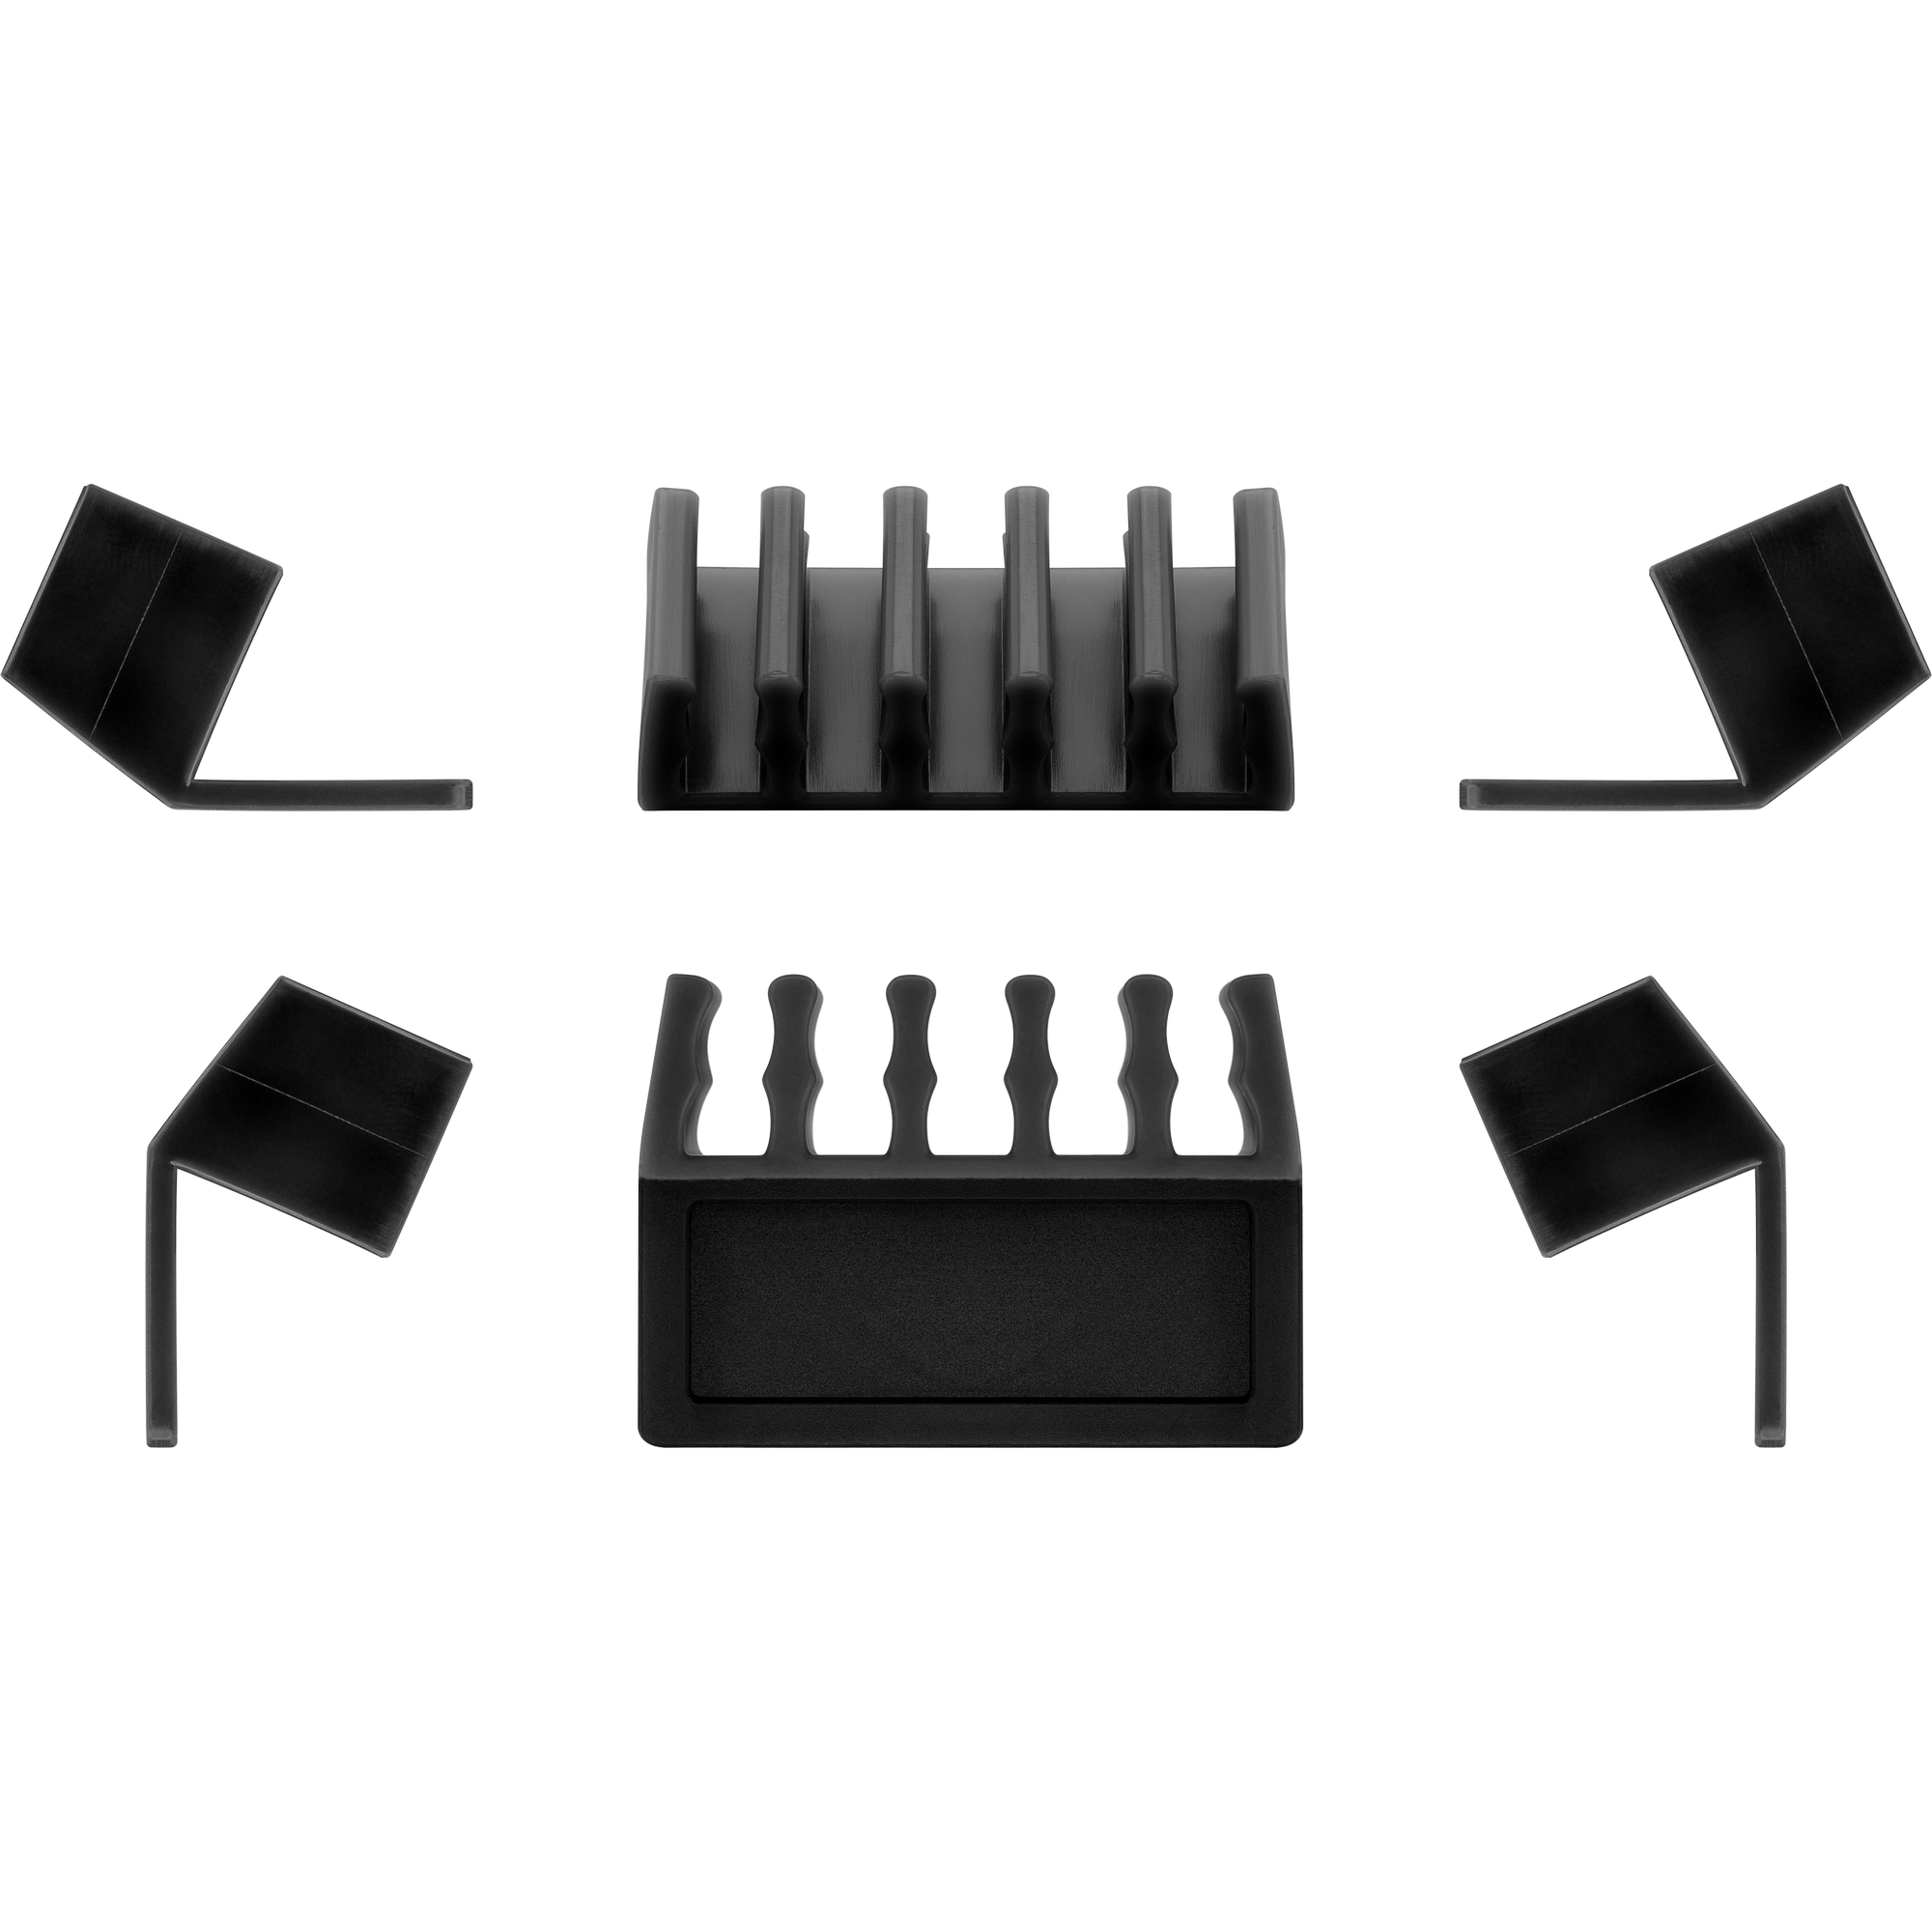 Kabelhalter 'Kabelmanagement' für Tischkanten 5 Slots, 2er Set + product picture